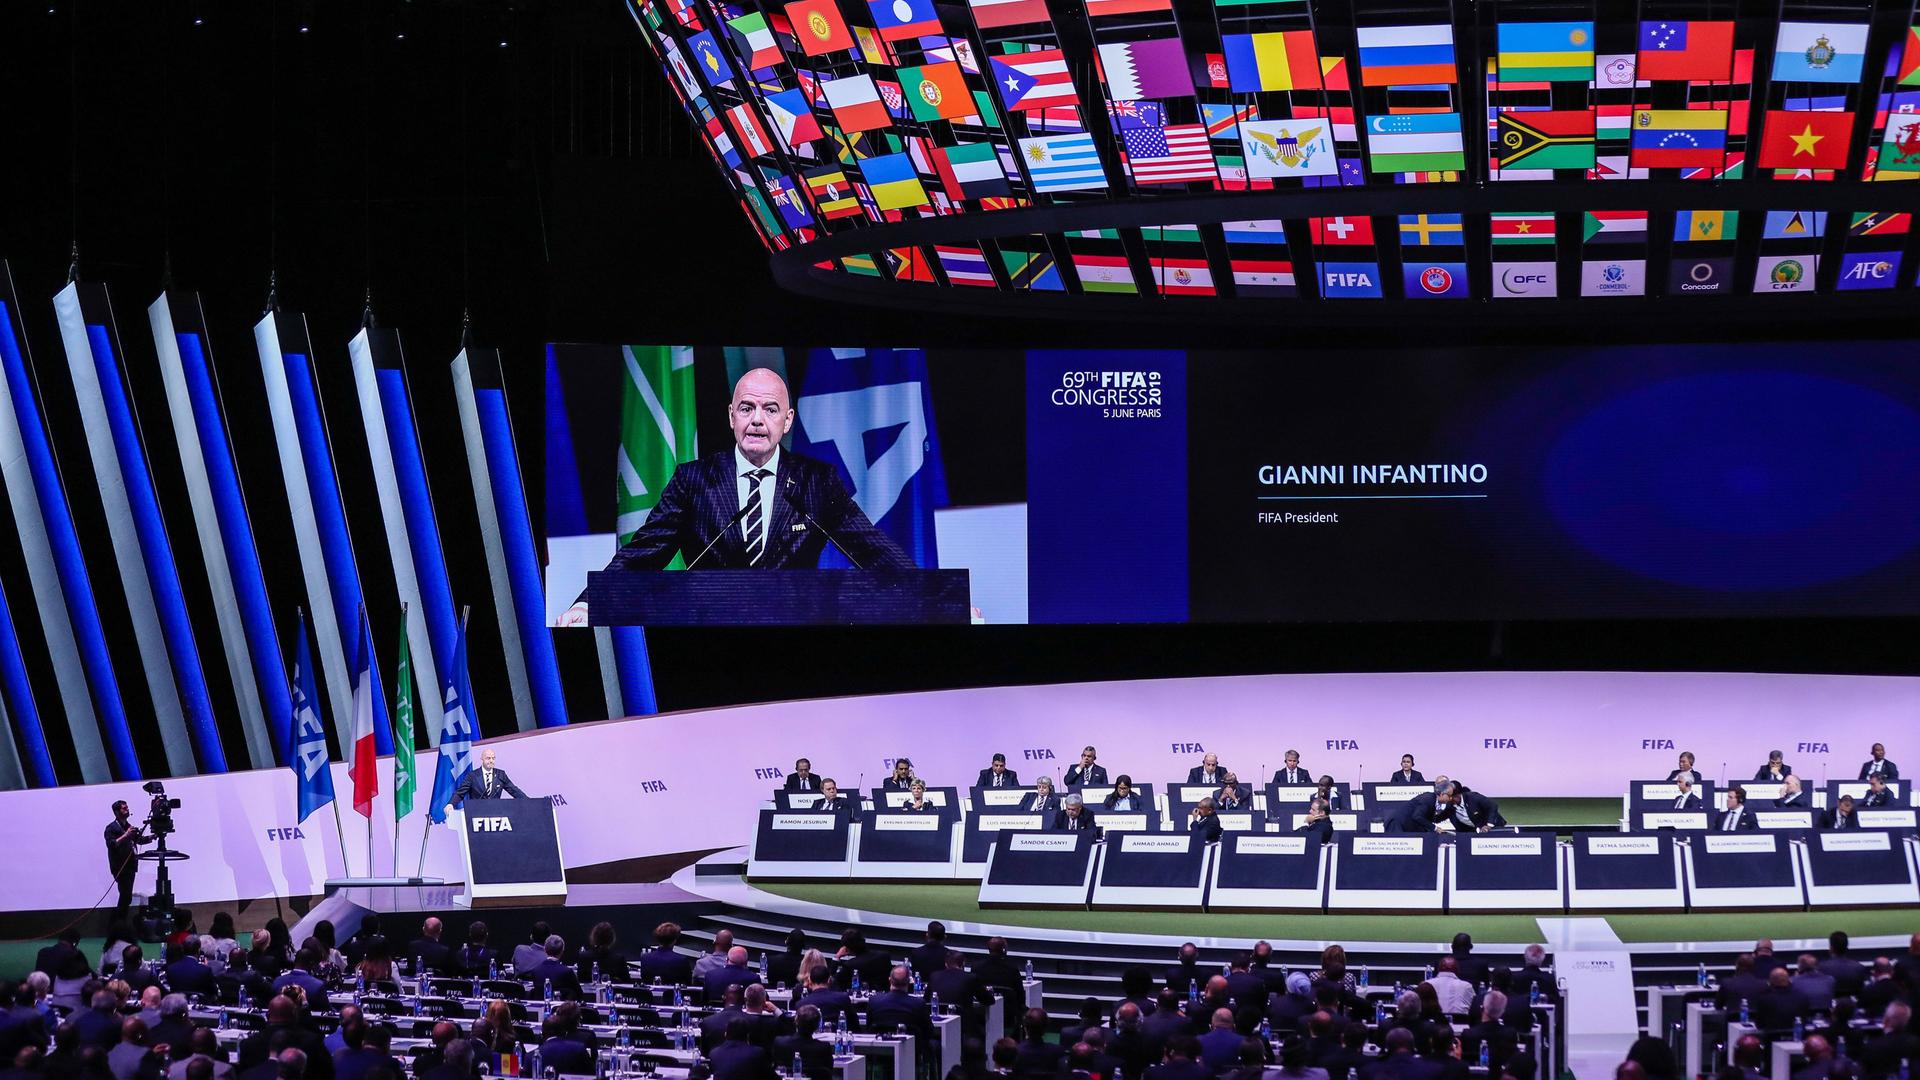 FIFA-Präsident Gianni Infantino bei seiner Wiederwahl auf dem FIFA-Kongress 2019 in Paris.